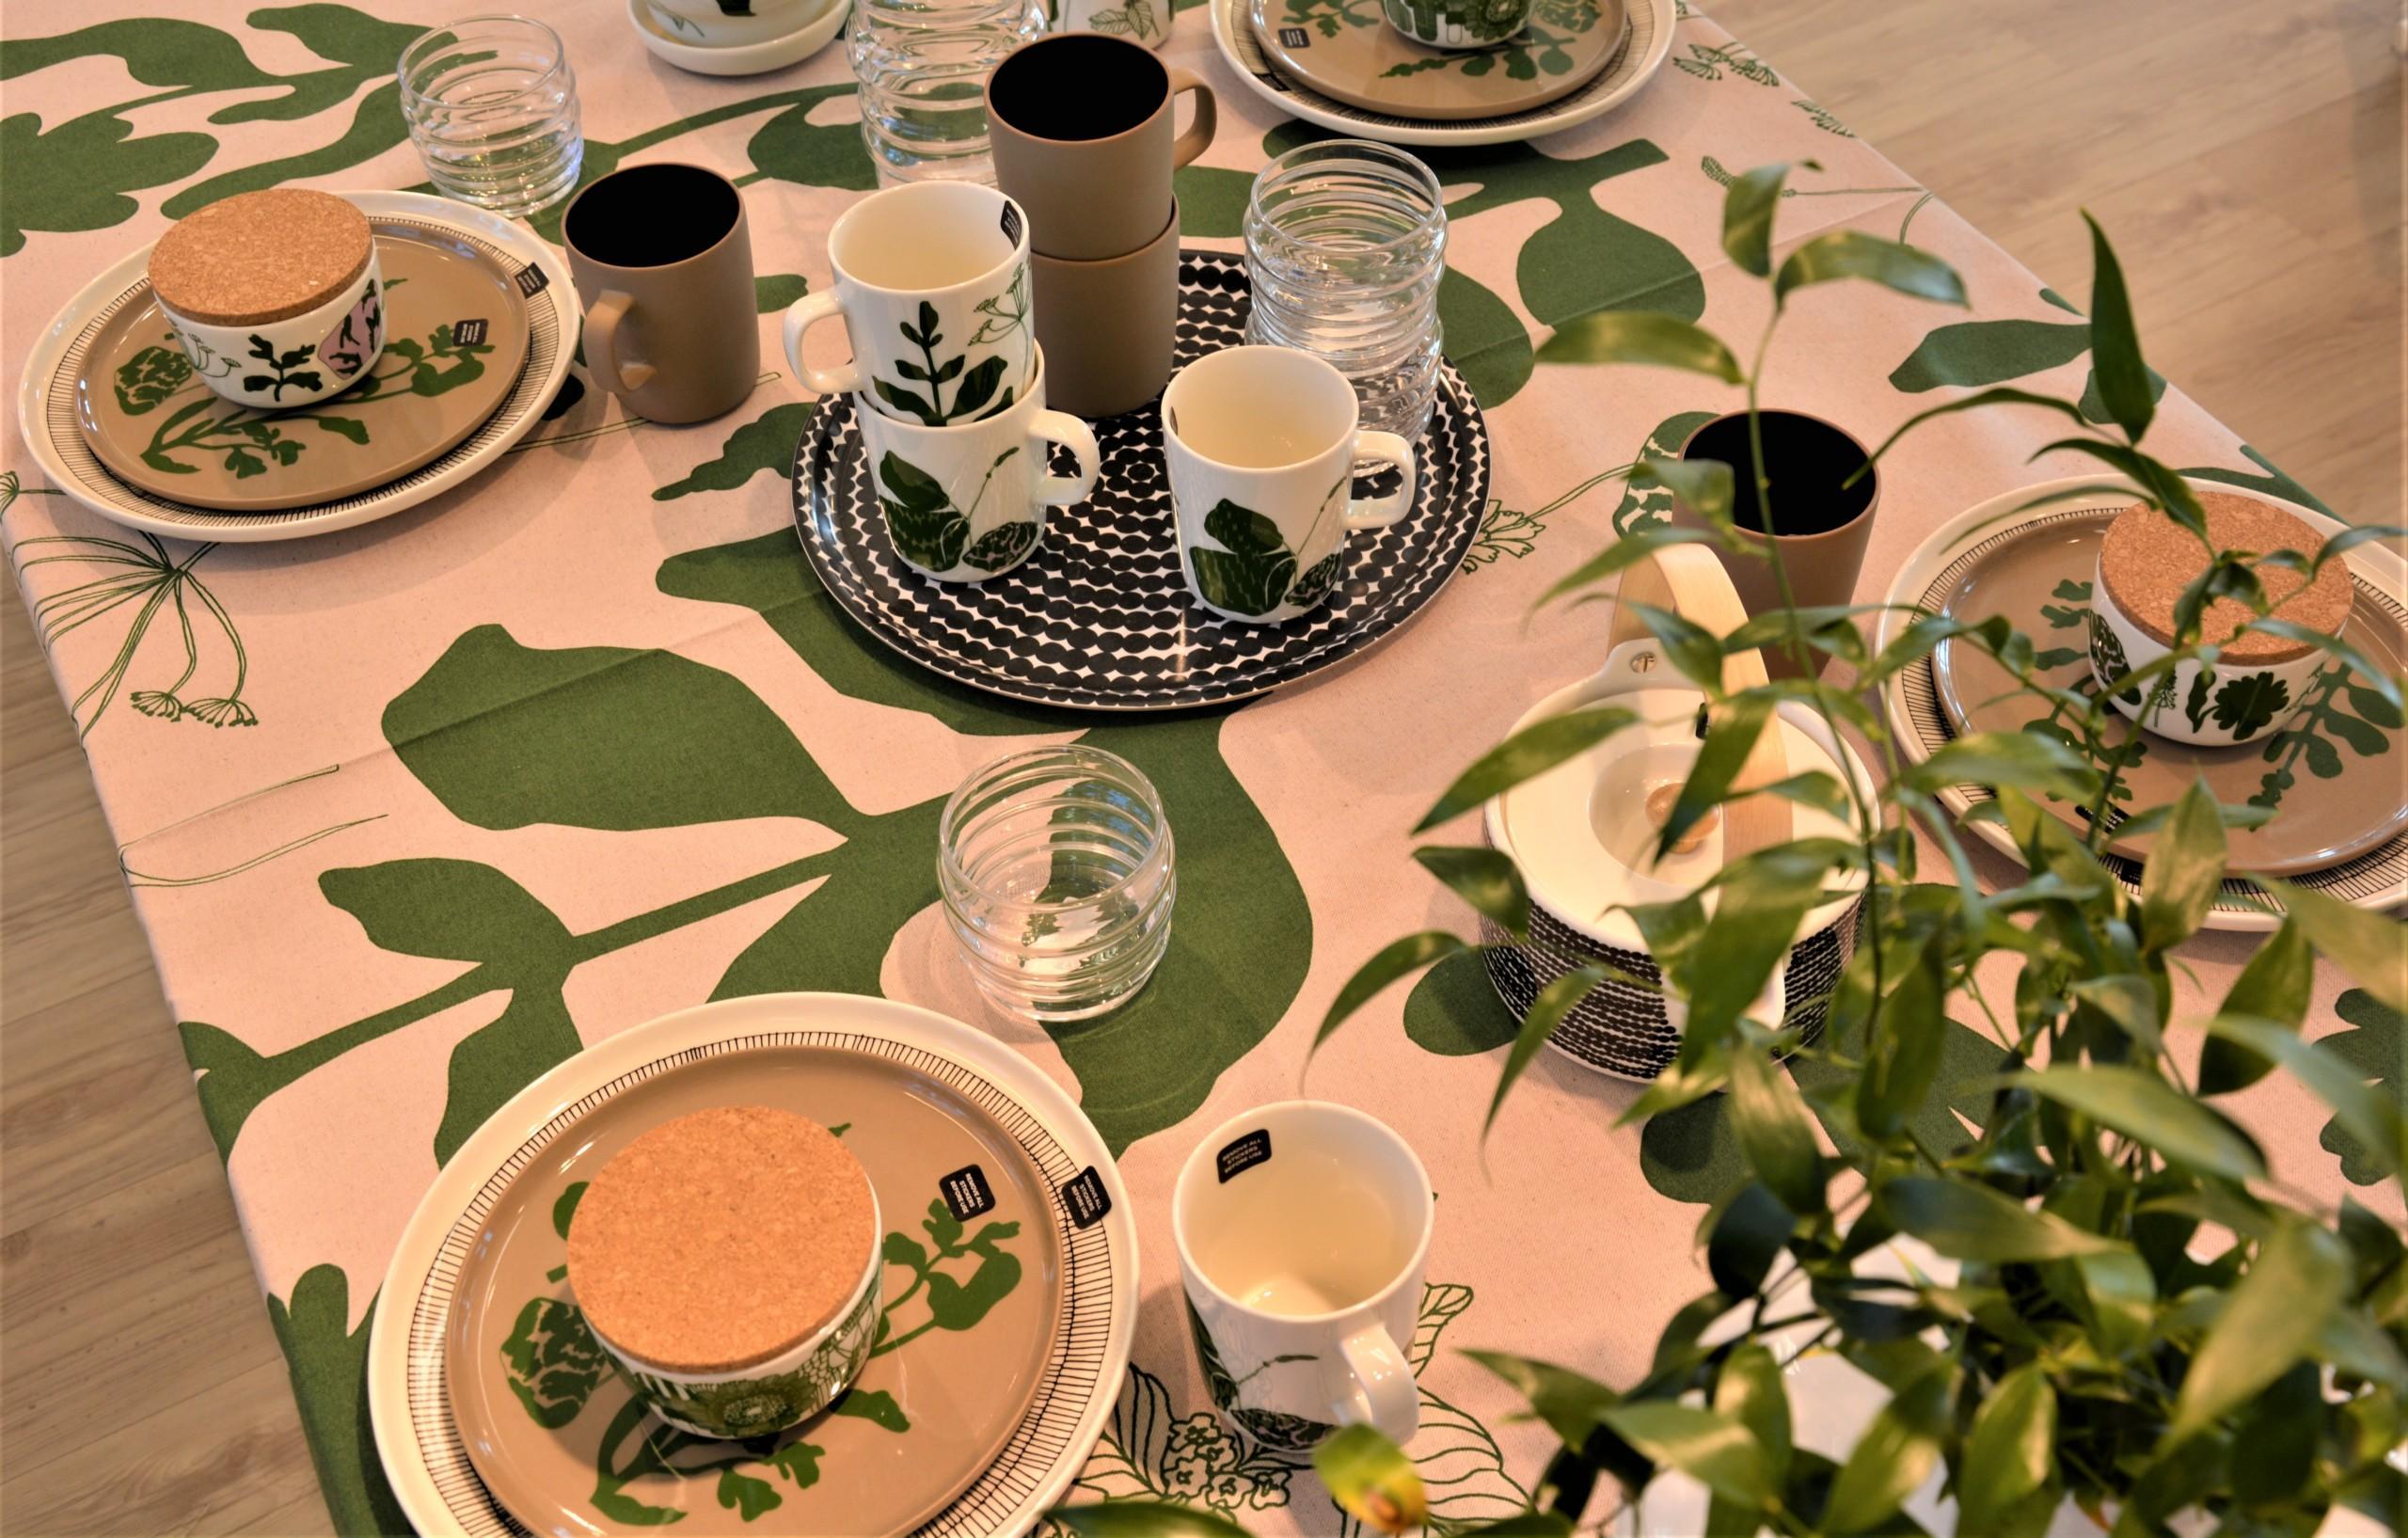 Marimekon lautaset, liina ja muut tuotteet pöydällä